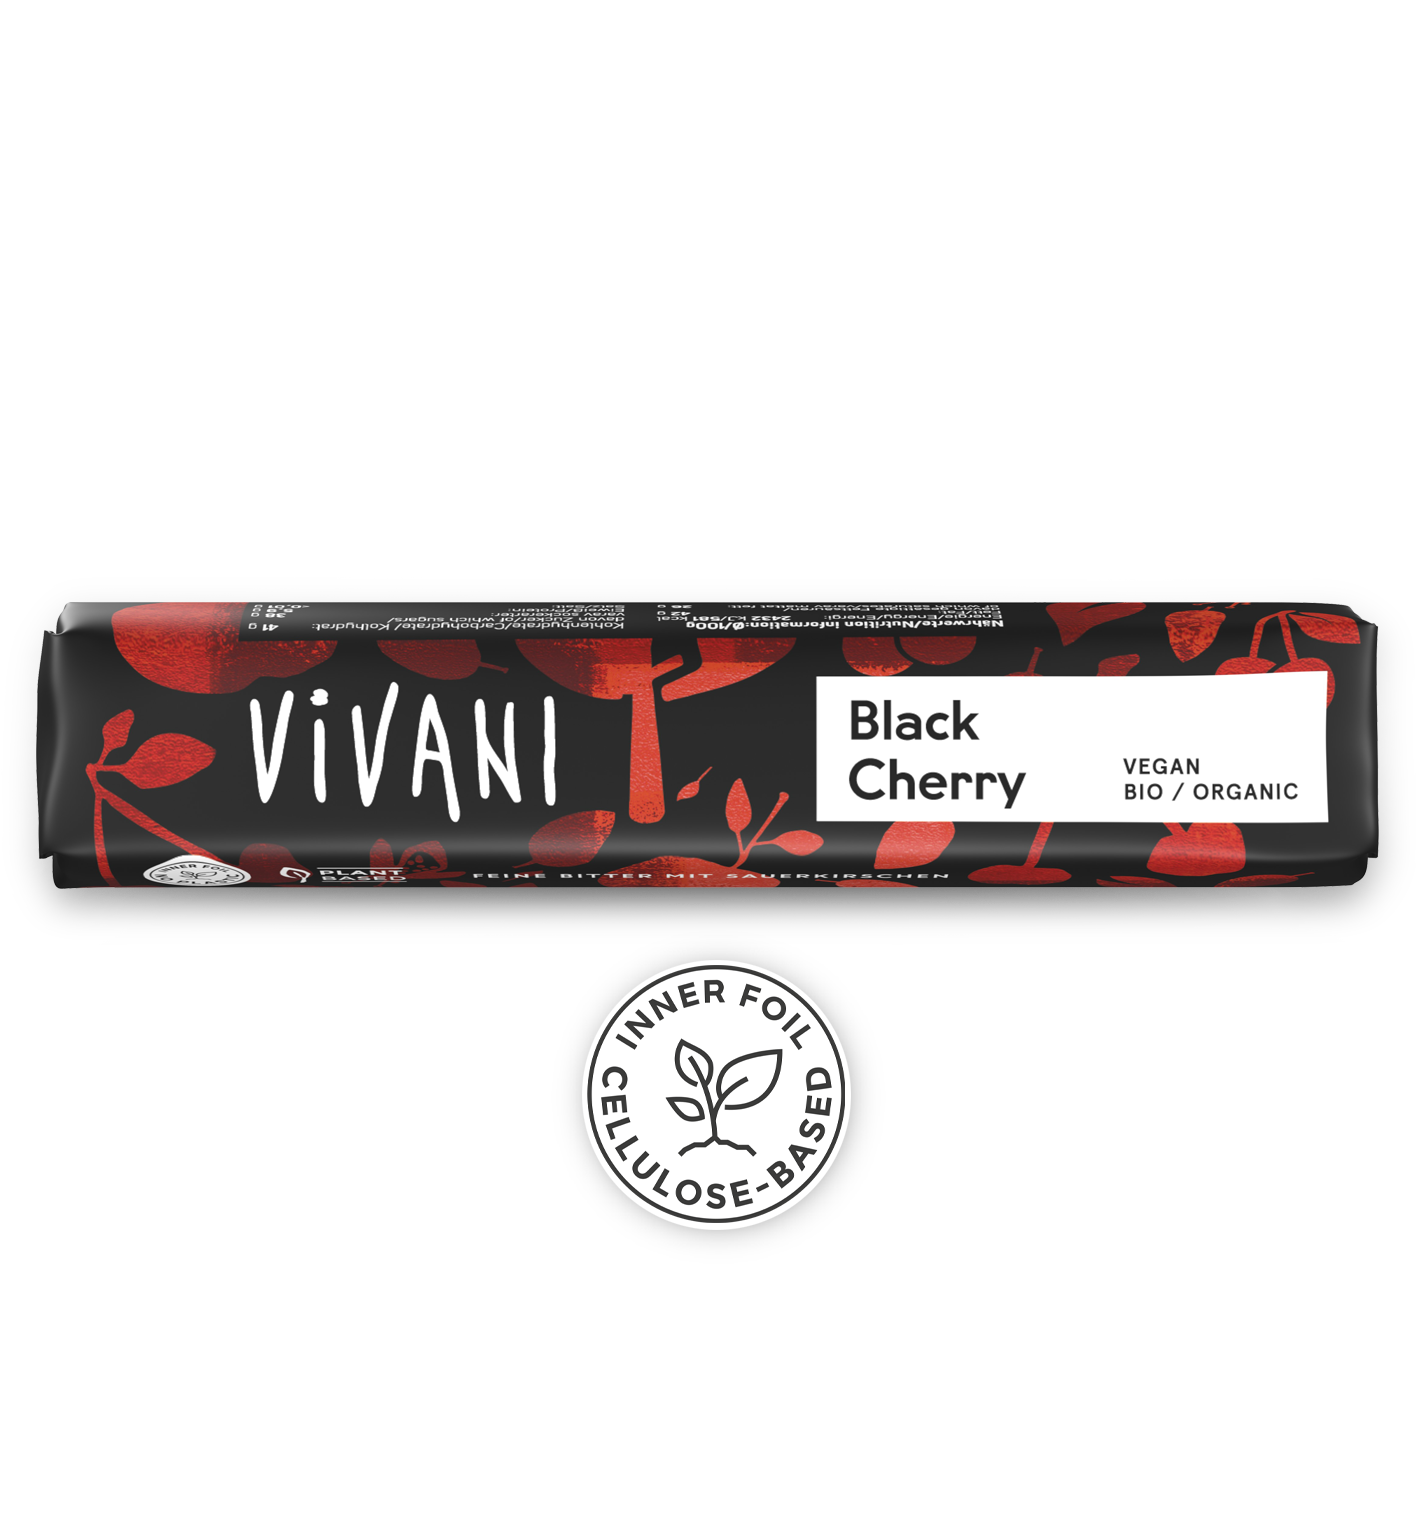 VIVANIs wegański organiczny baton czekoladowy Black Cherry z wiśniowym chrupkiem